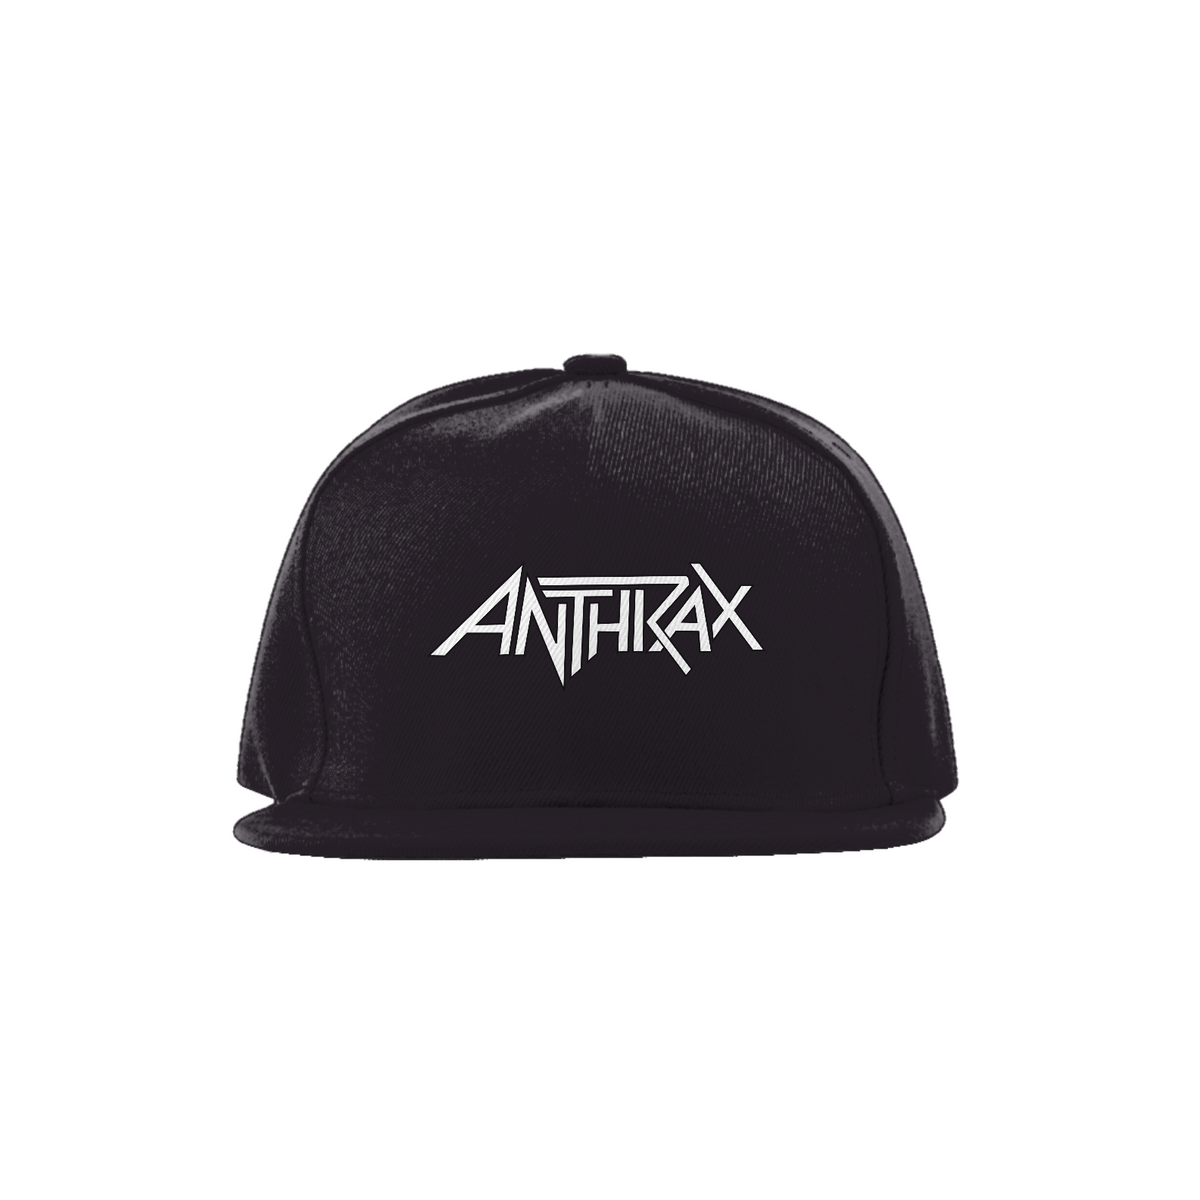 Nome do produto: Boné Anthrax 